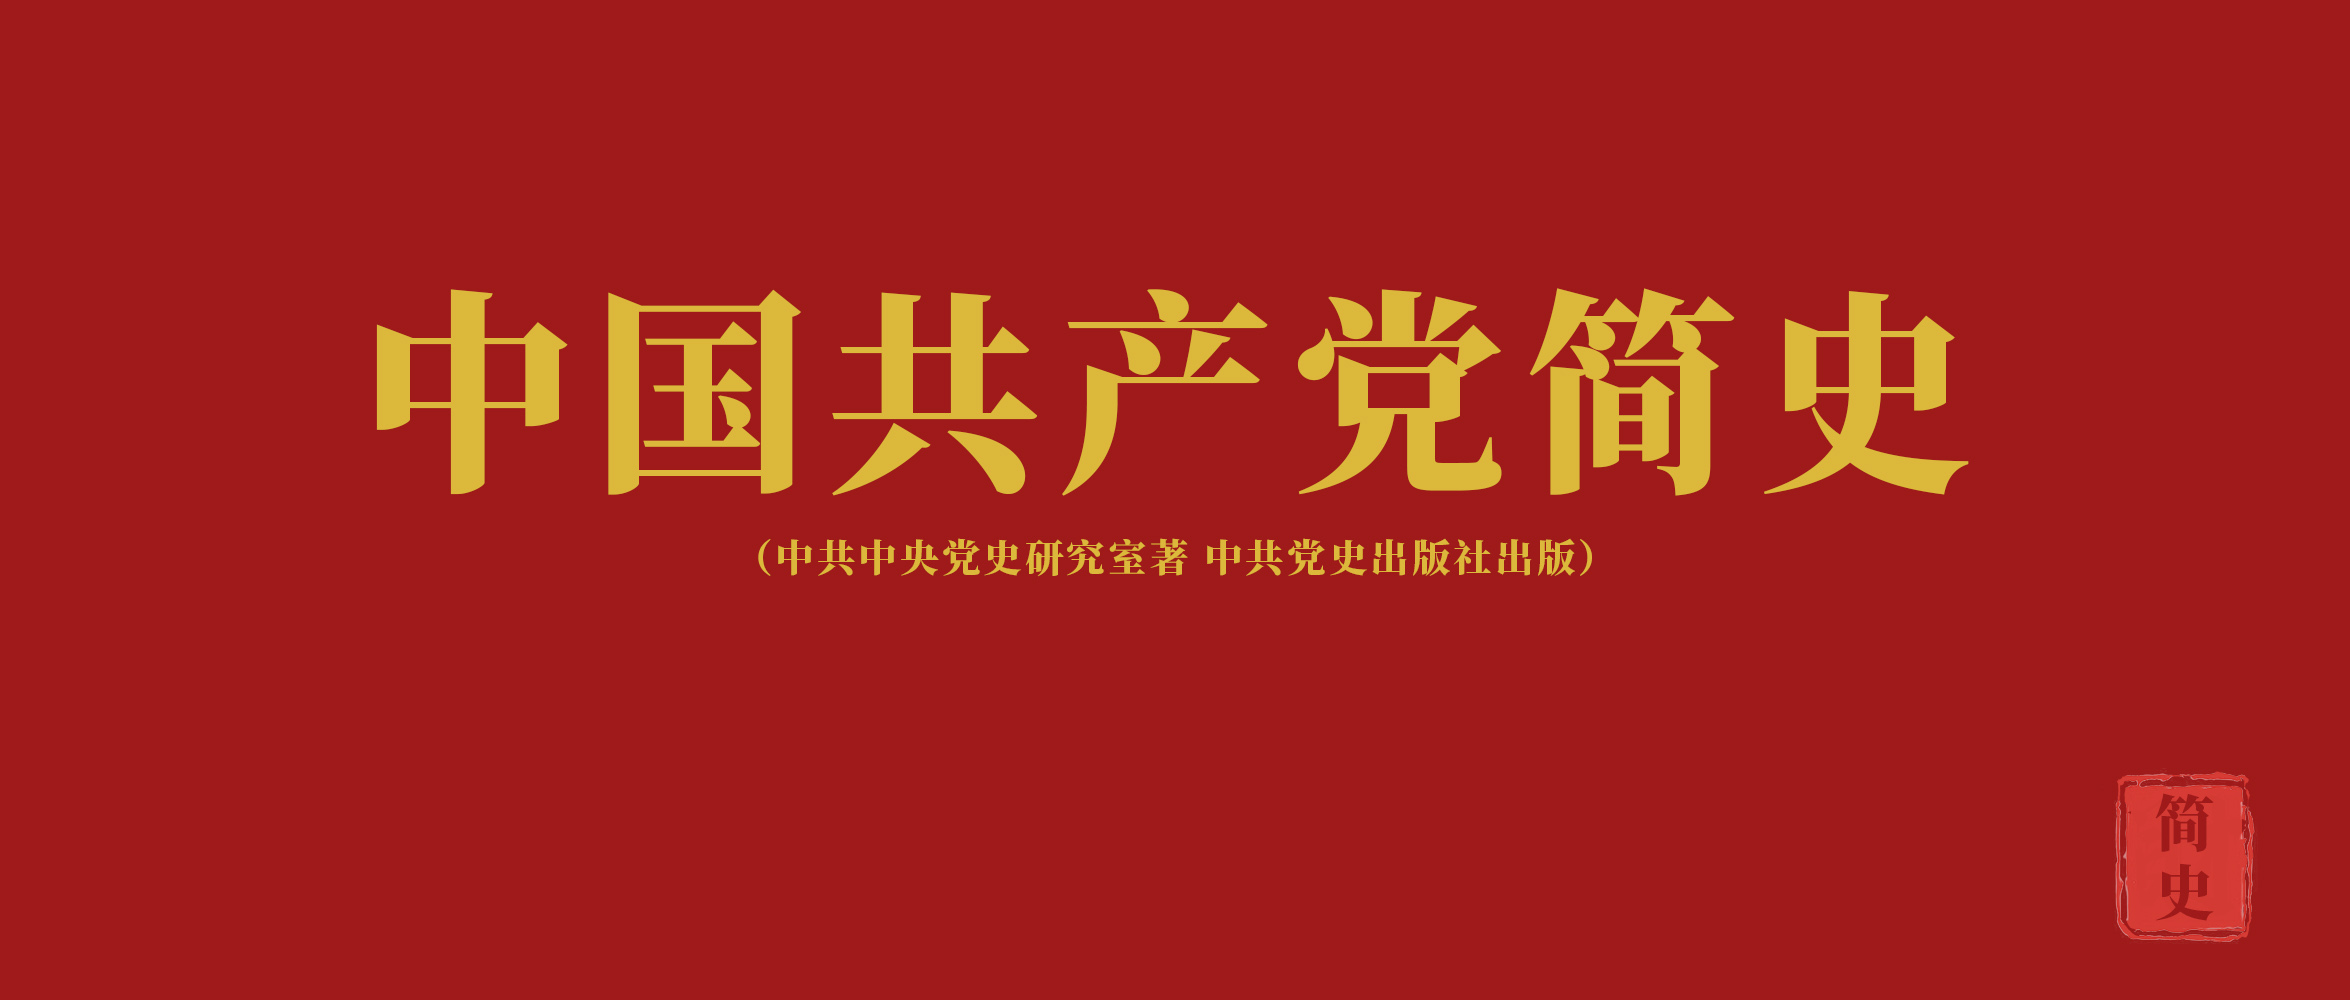 《中国共产党简史》第四章夺取民主革命的全国胜利